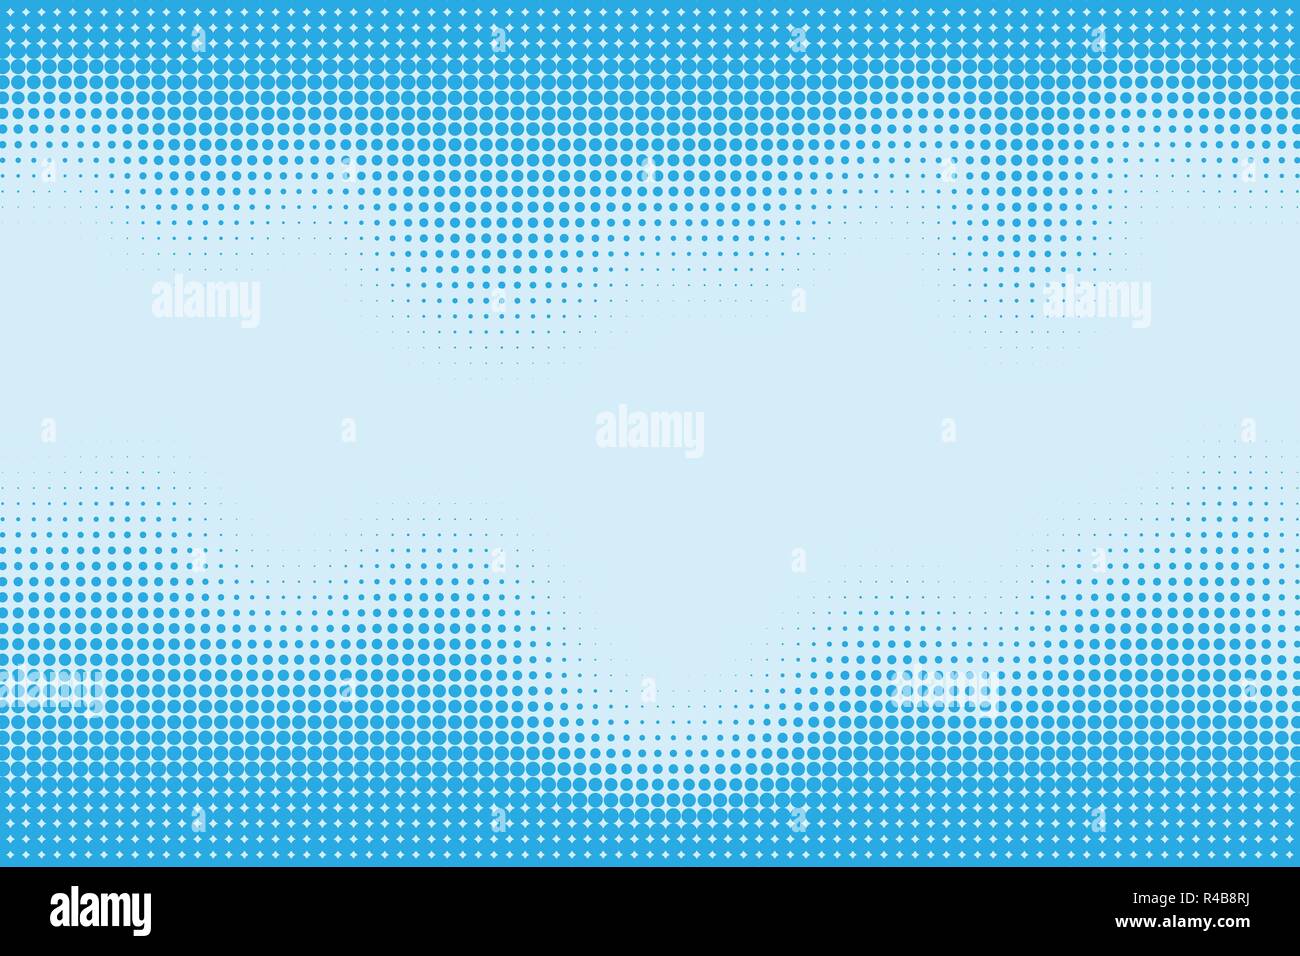 Halftone pattern puntiforme come sfondo. Fumetto pop art style punti blu texture vettoriali per la progettazione grafica e web Illustrazione Vettoriale